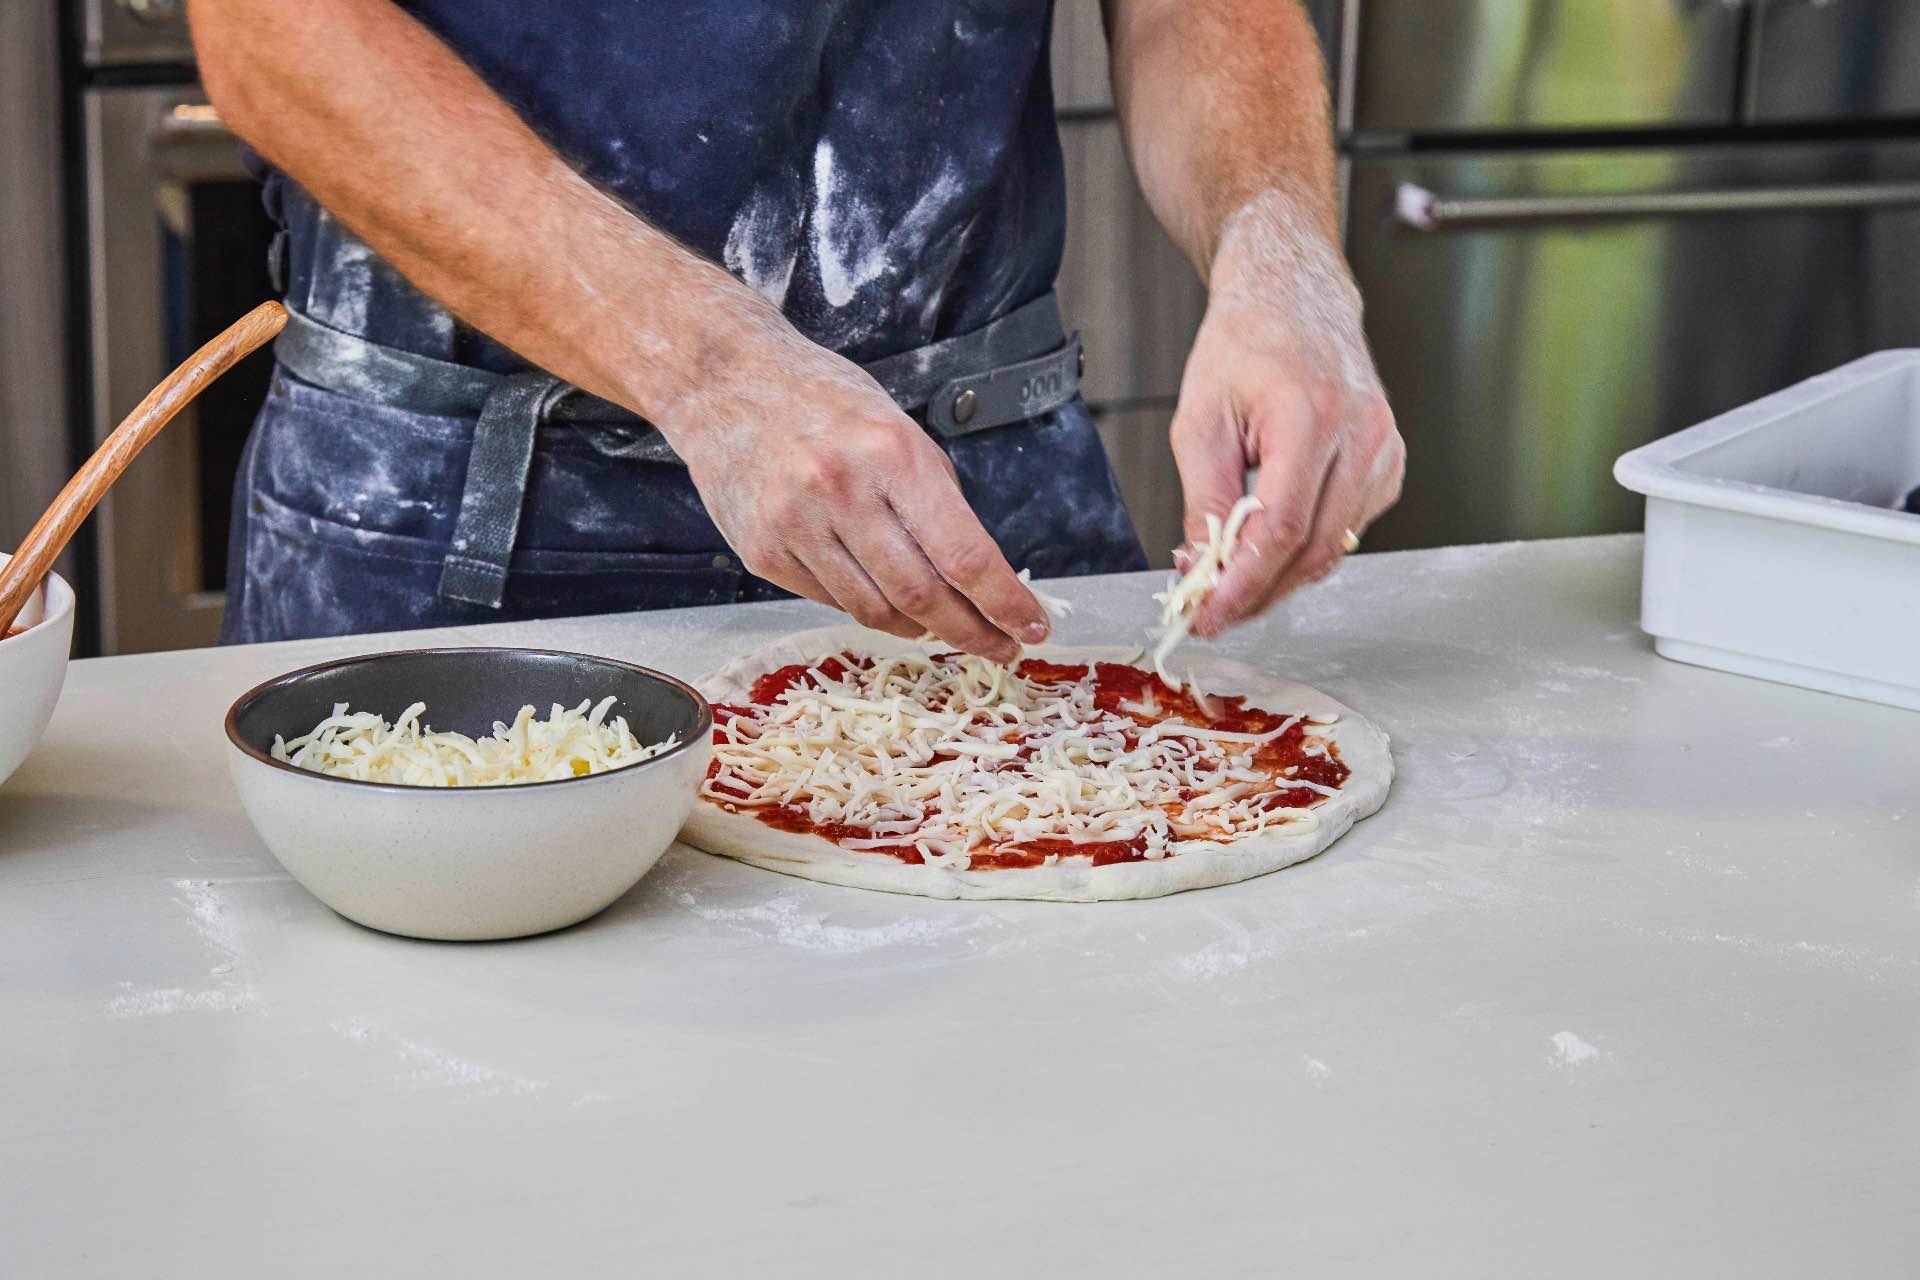 Pizza al formaggio New York-Style, cotta con la piastra per pizza in acciaio Ooni 13